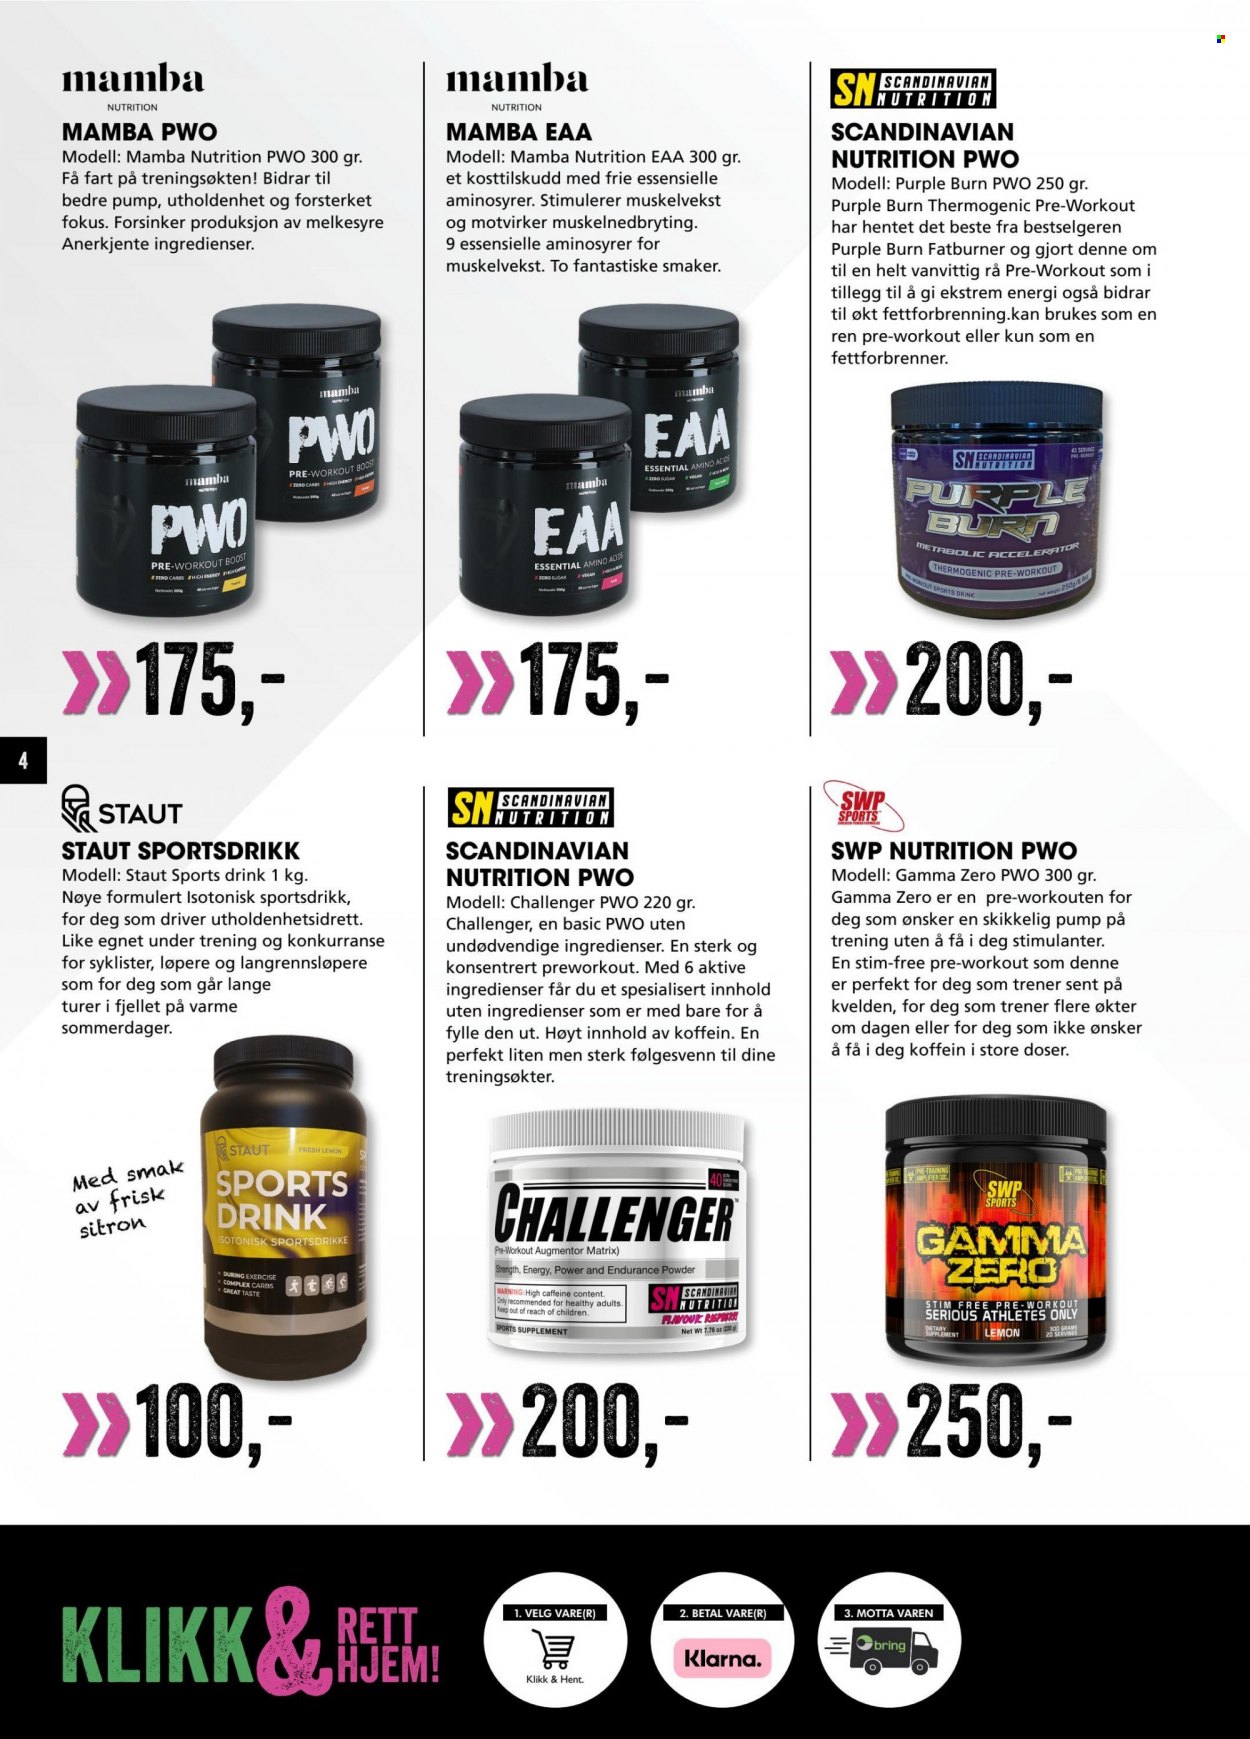 Kundeavis Sport Outlet - Produkter fra tilbudsaviser - powder, vegan, sitron. Side 4.